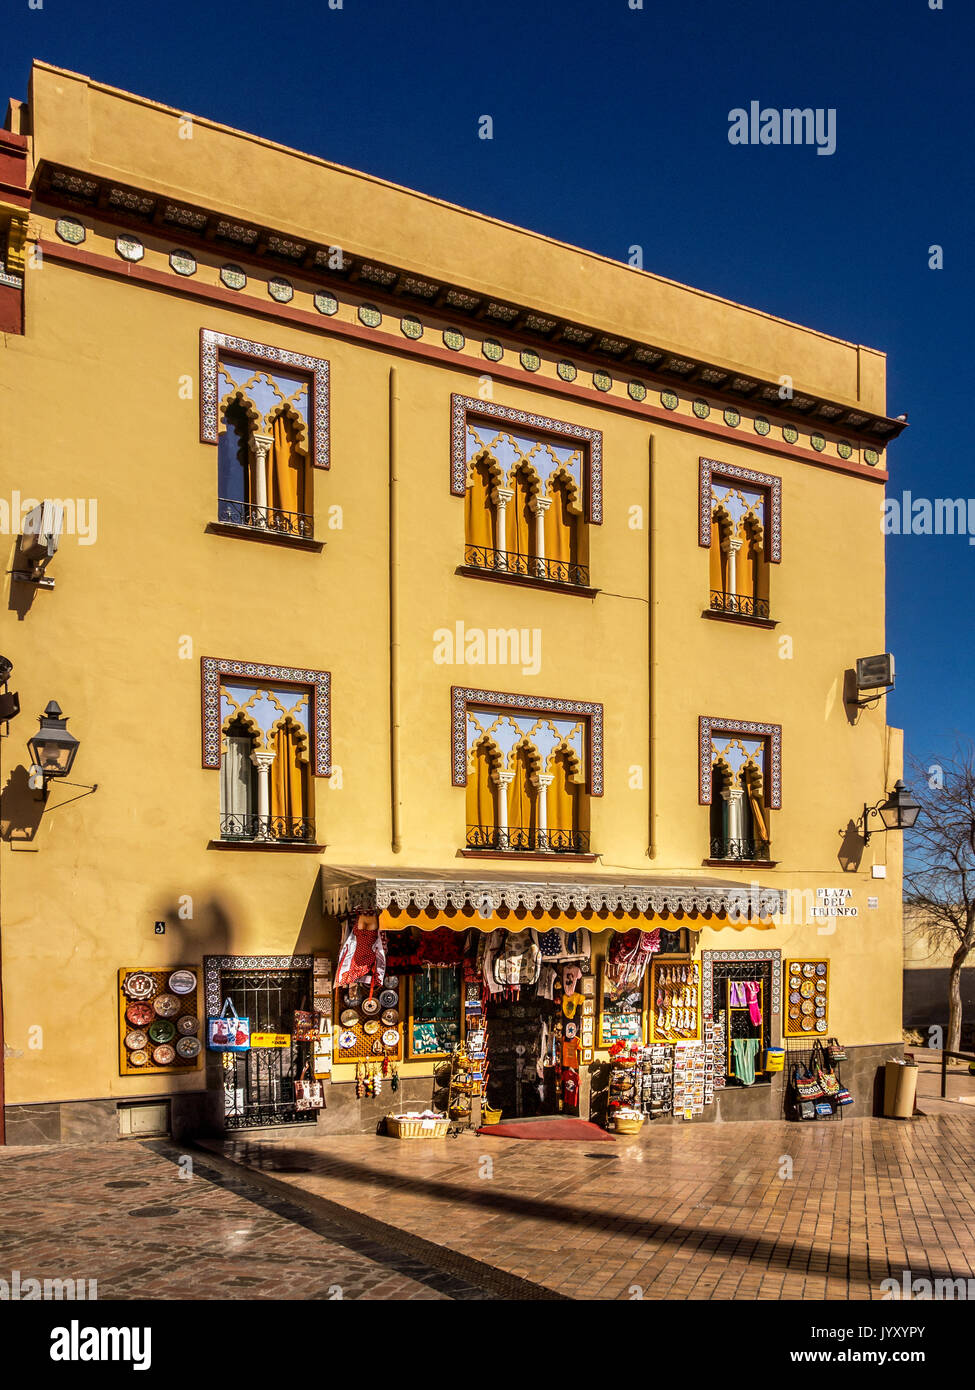 CORDOBA, SPAGNA - 12 MARZO 2016: Grazioso negozio di souvenir nella città vecchia immerso nella luce dorata del tardo pomeriggio Foto Stock